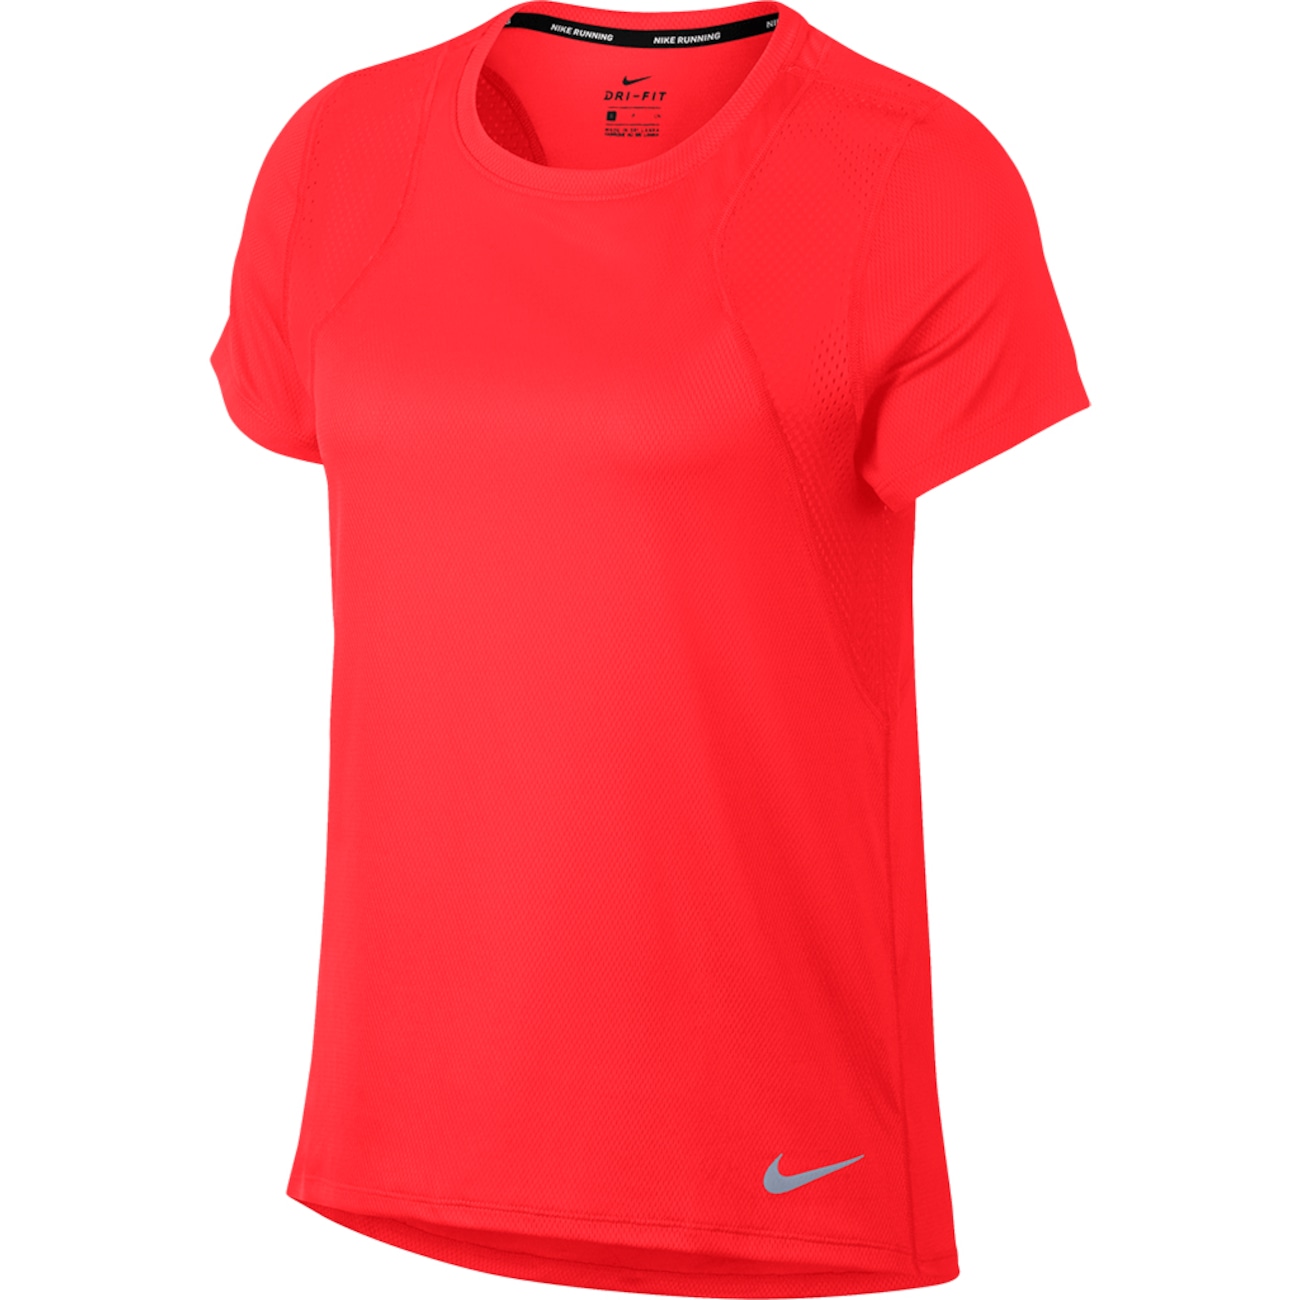 Camiseta Nike Run Feminina - Foto 1